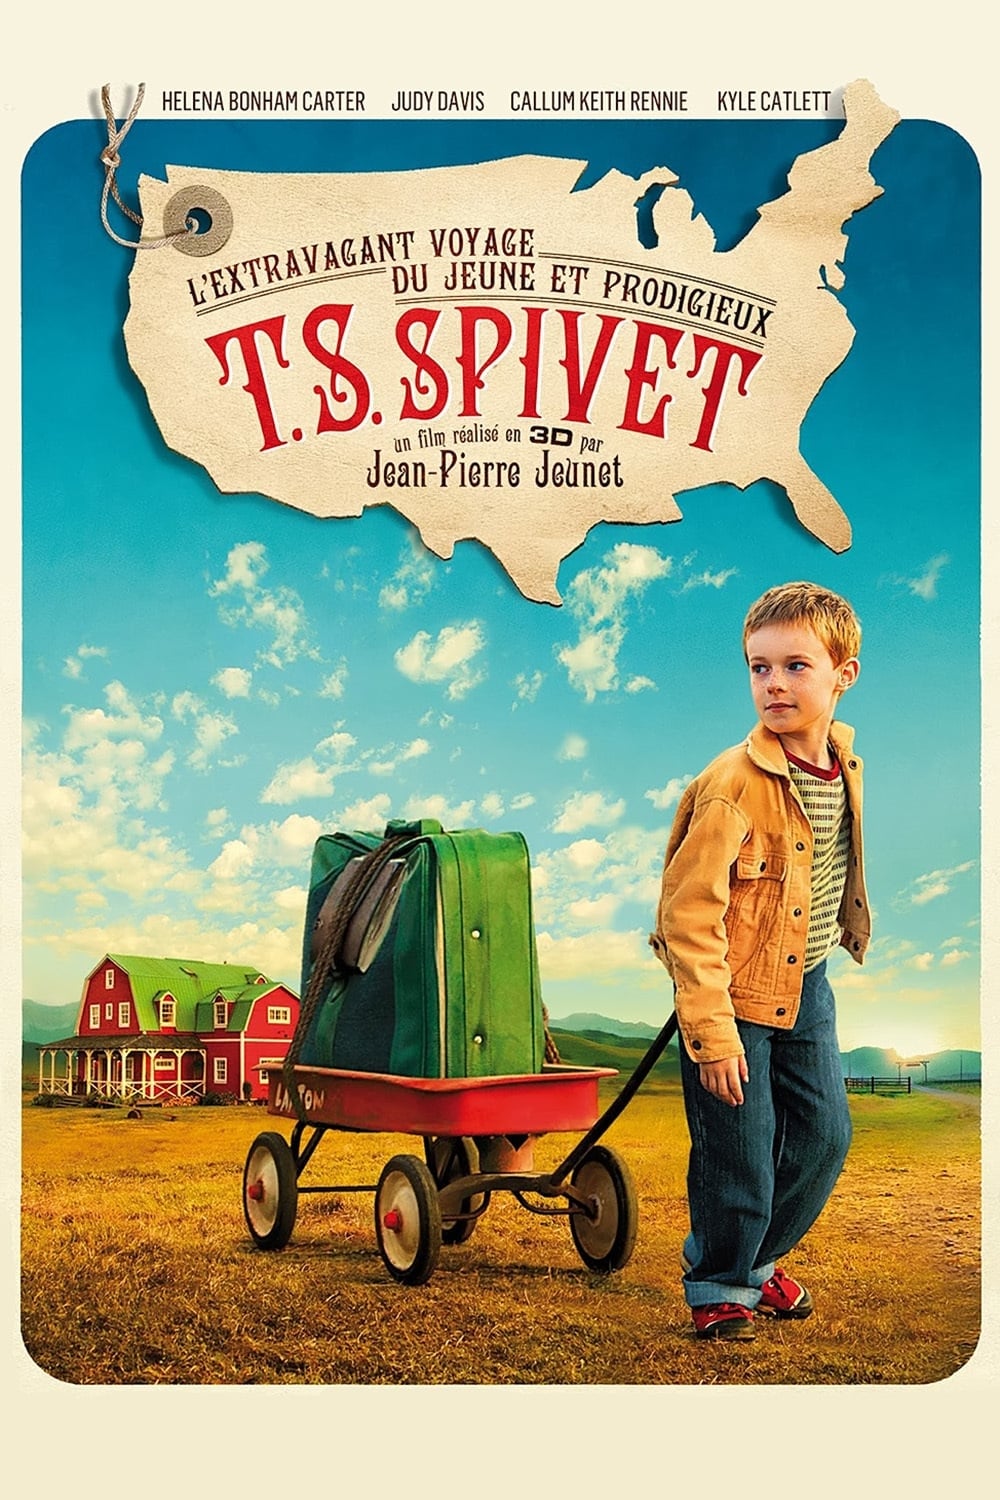 L’Extravagant Voyage du jeune et prodigieux T. S. Spivet est-il disponible sur Netflix ou autre ?